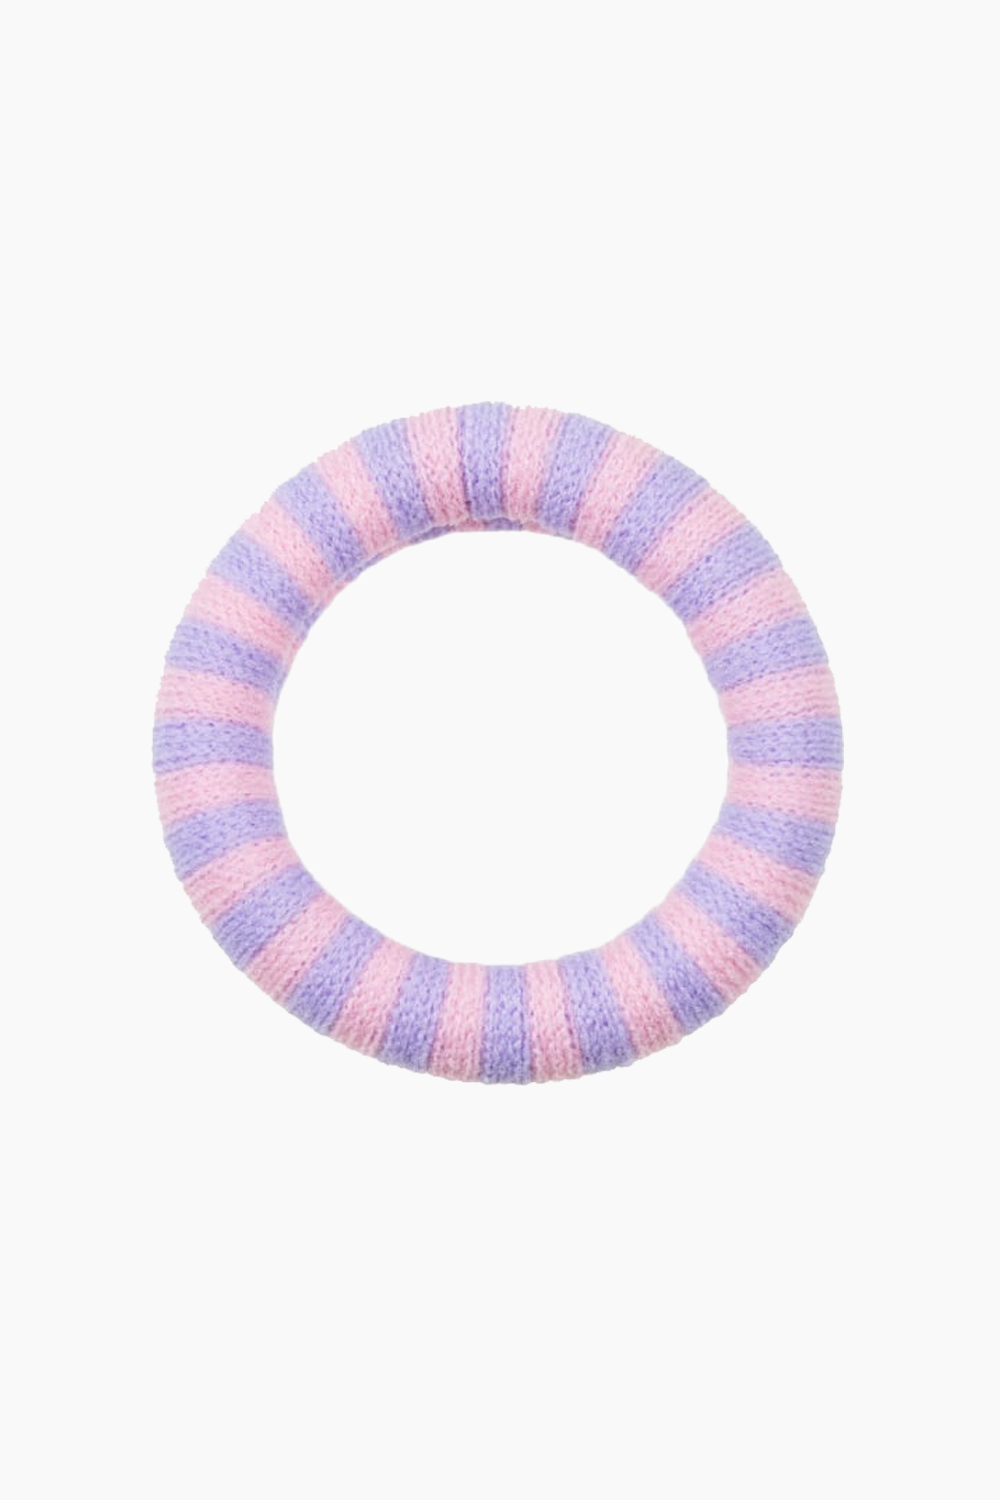 Efie Elastic - Pink/Lavender - Pico